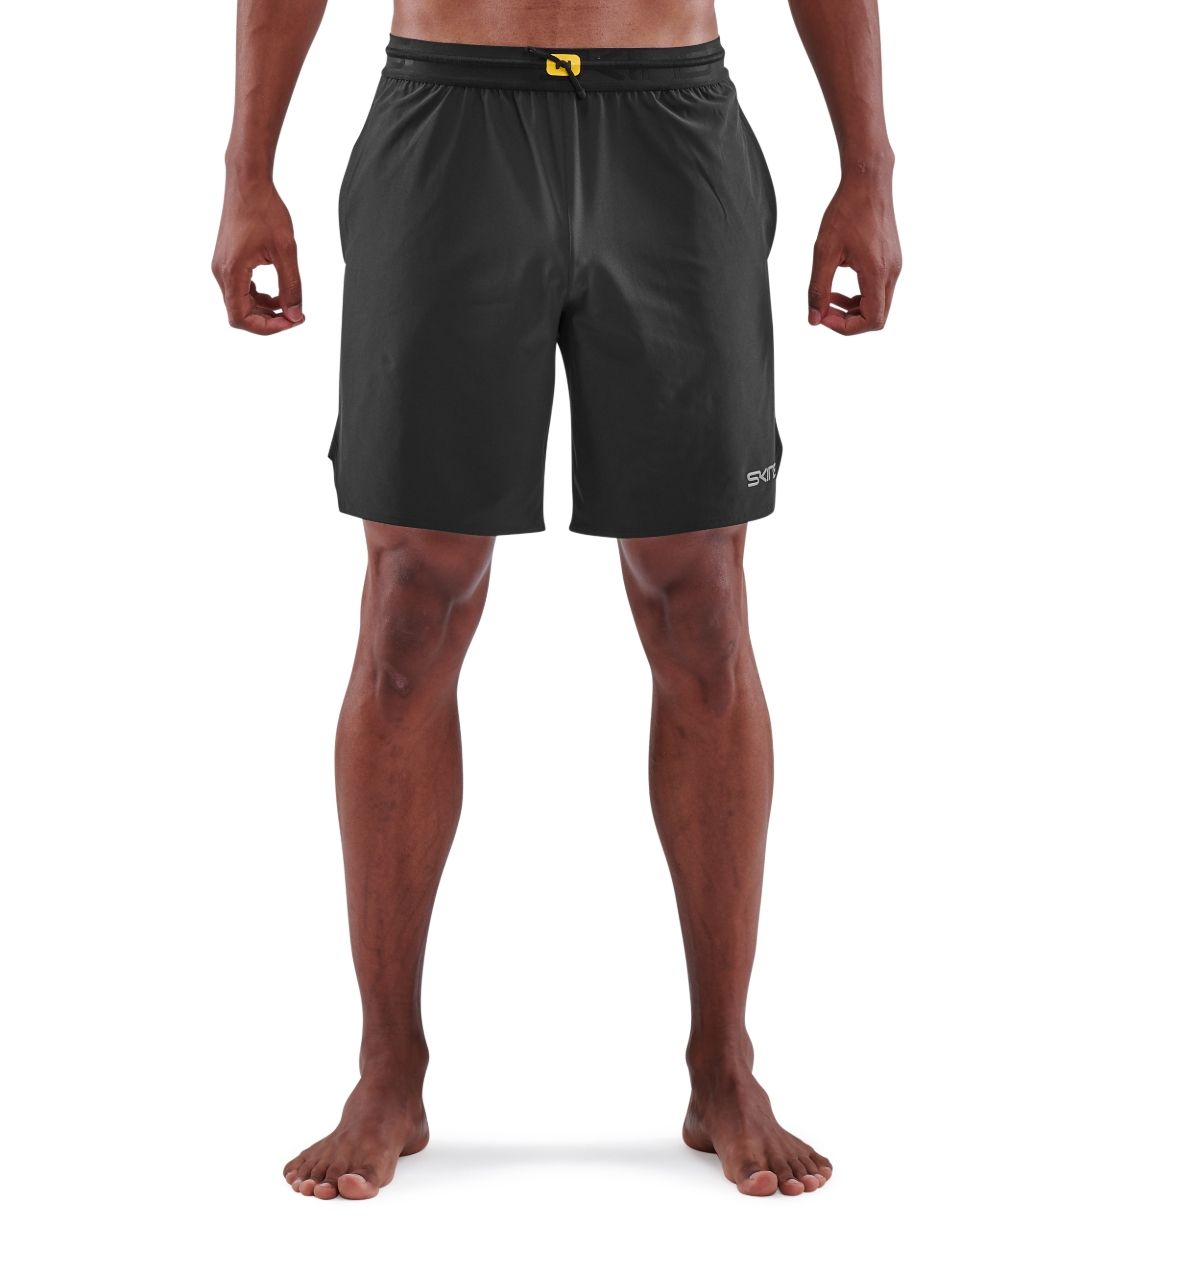 ST0150071 Мужские шорты для кроссфита SKINS серия 3 (BLACK Чёрный M)